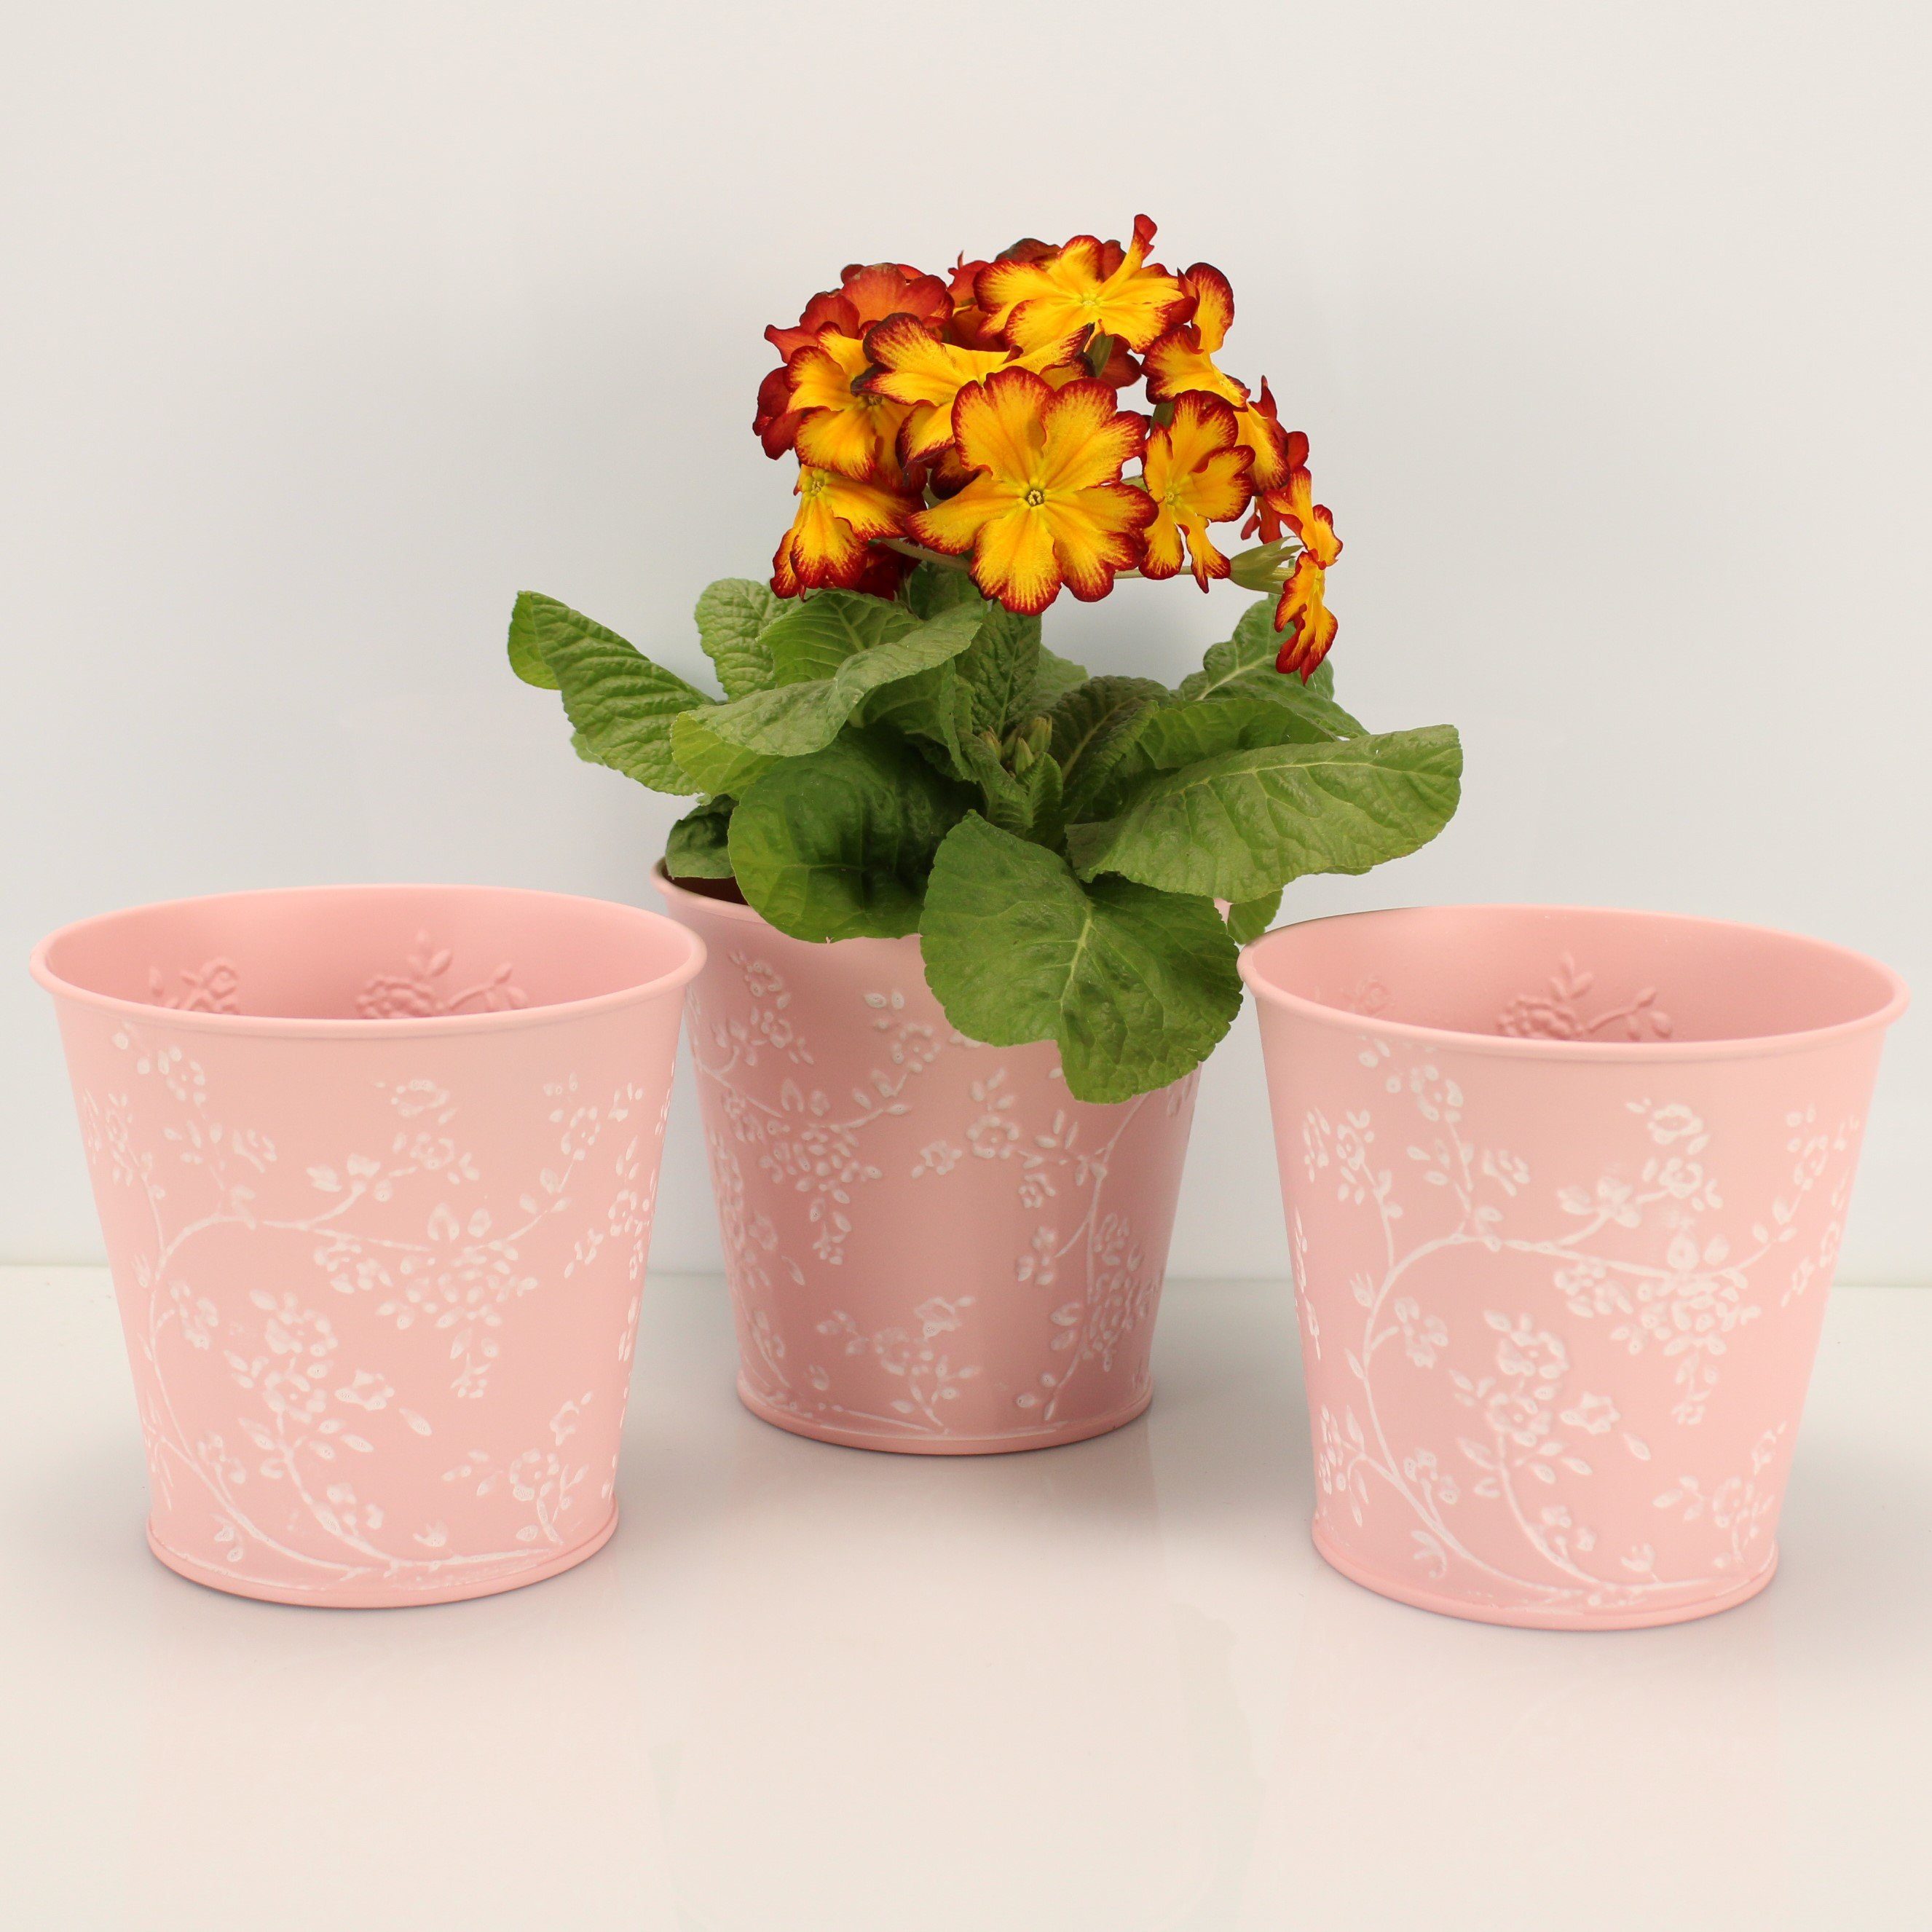 Online-Fuchs Blumentopf 3er Set Blumentöpfe aus Metall mit 3D-Blumenmuster 14 cm groß (für Blumen oder Kräuter), verschiedene Farben wählbar